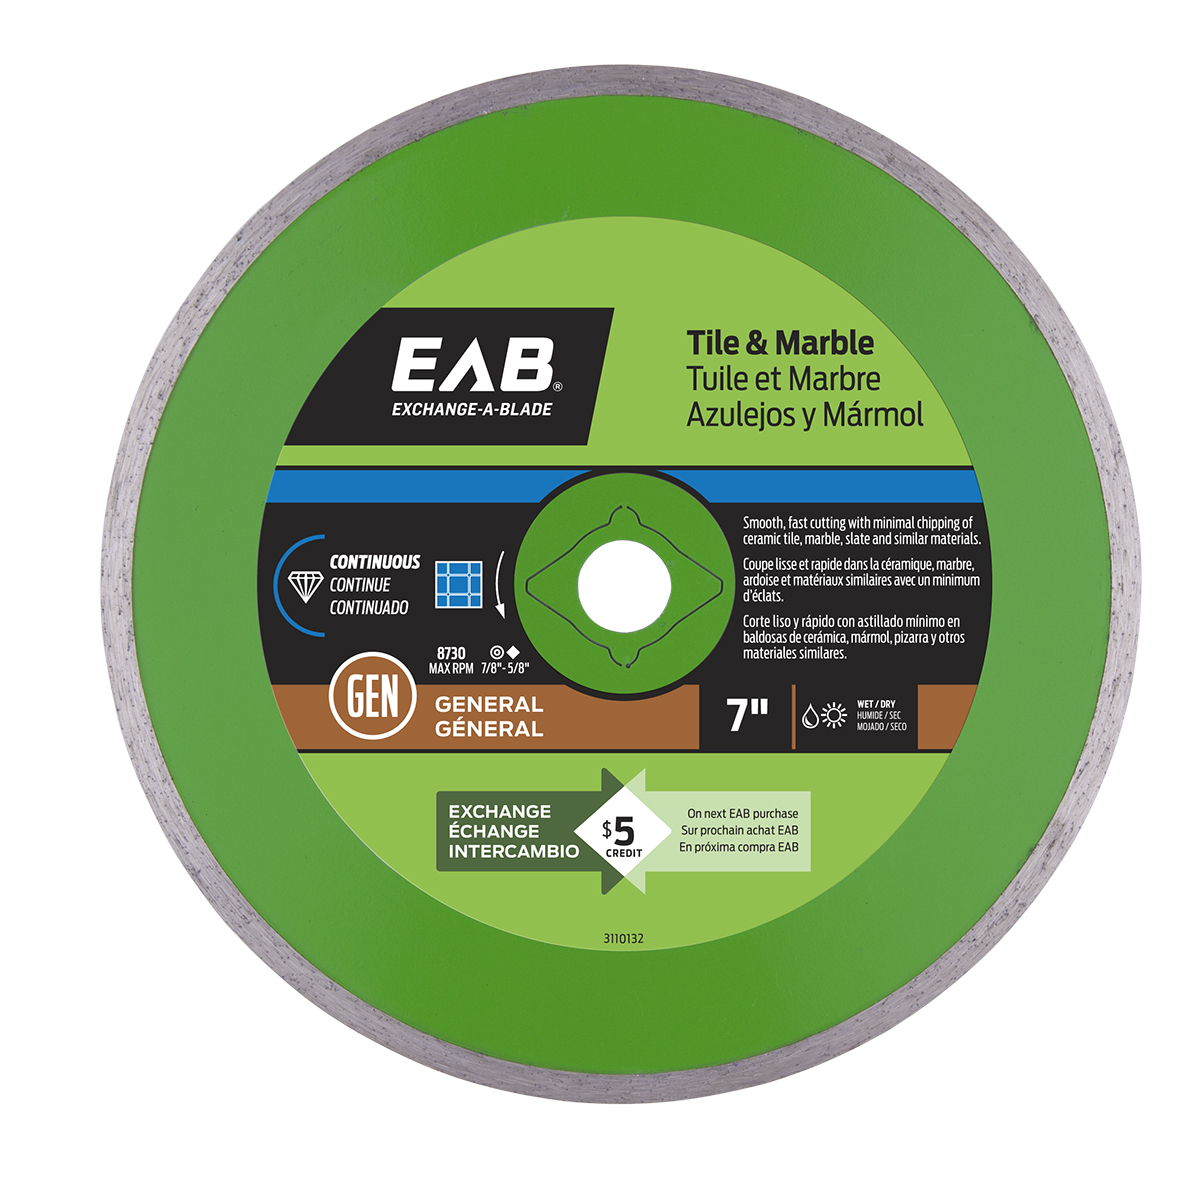 EAB (3110132) product